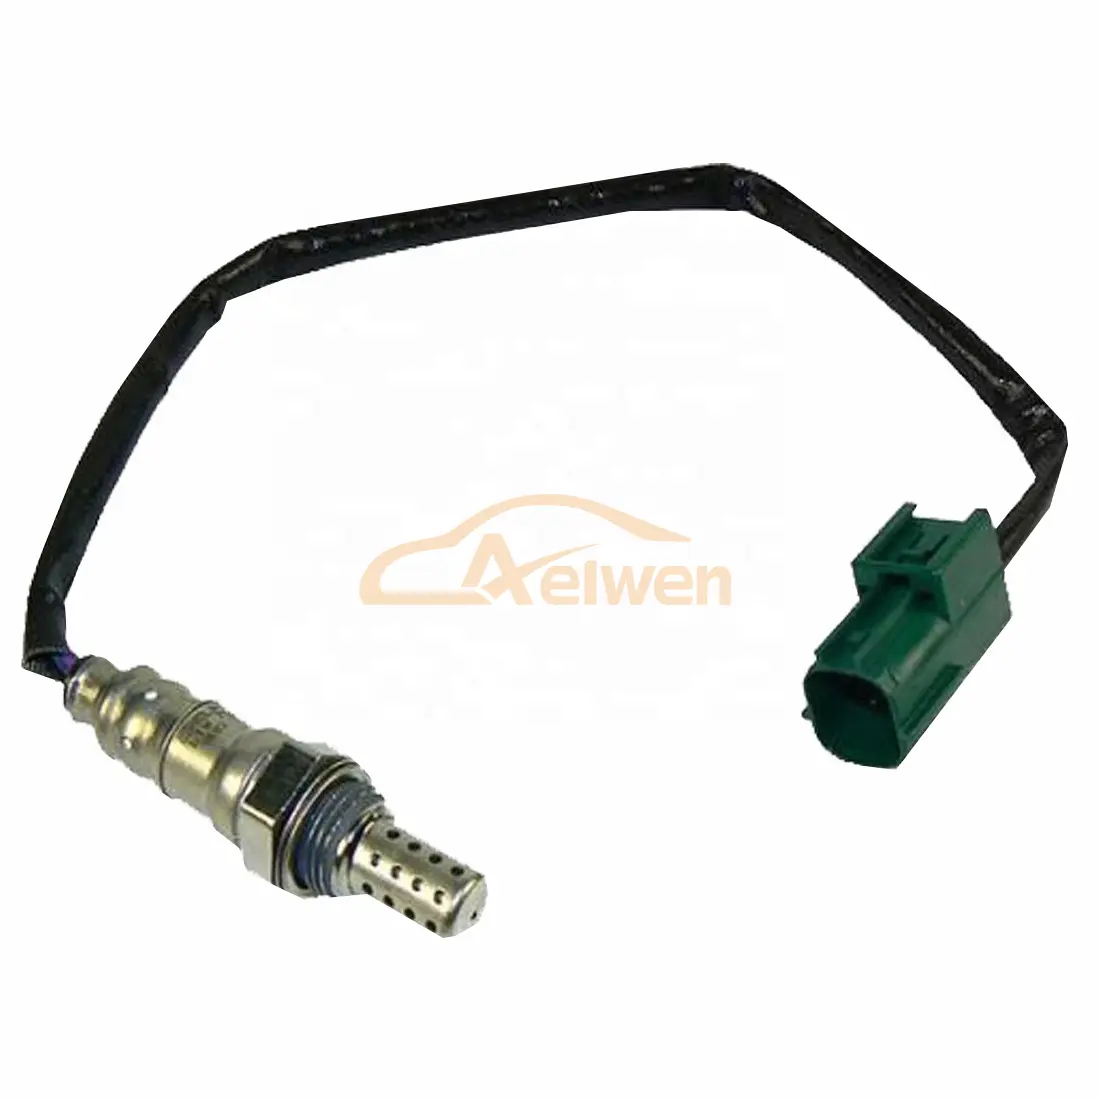 Aelwen otomobil parçaları araba oksijen sensörü için Fit Bosch 0 258 006 462 22690AU000 0258006462 258006462